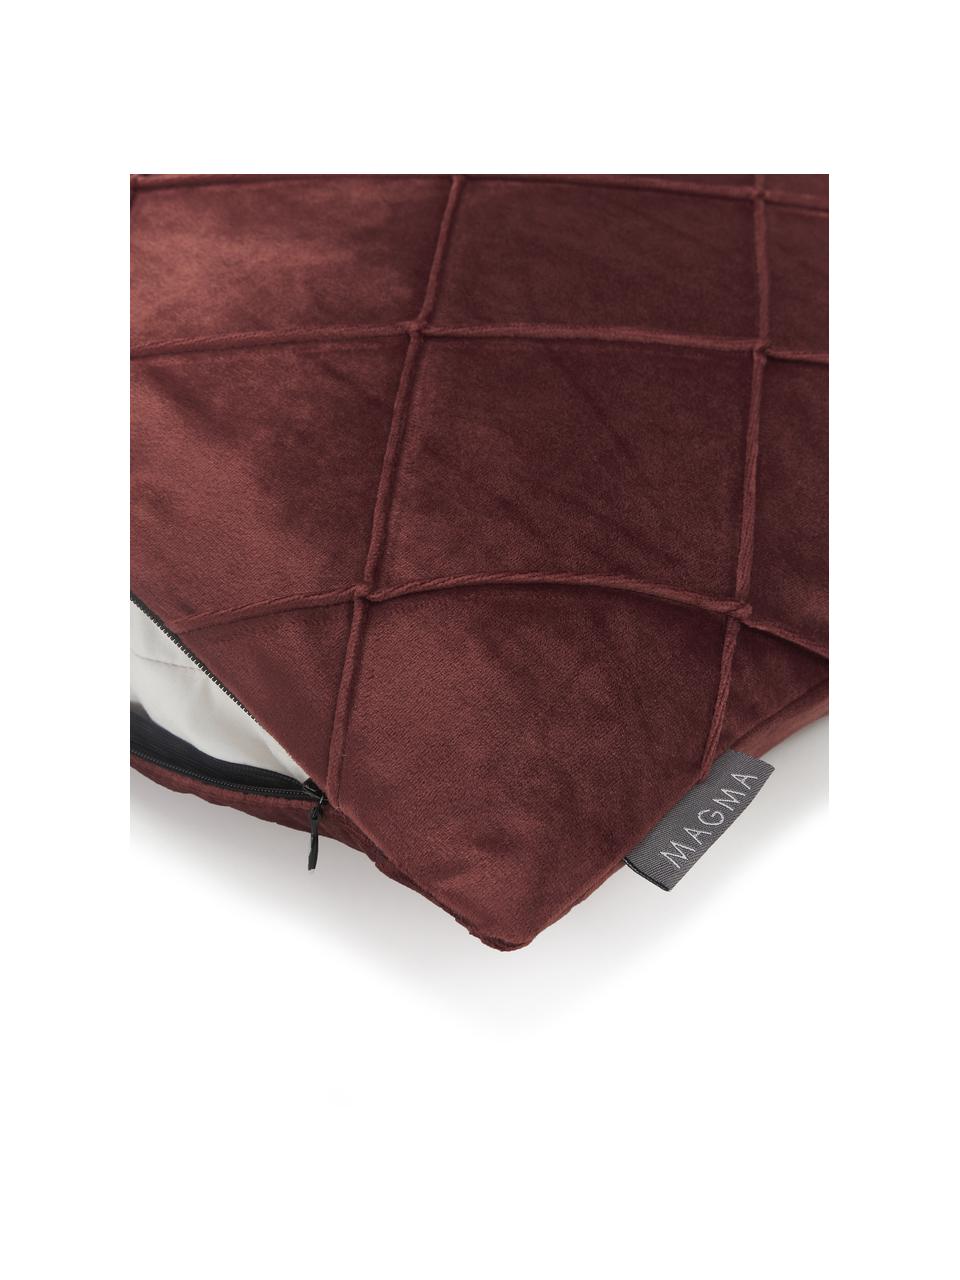 Housse de coussin velours terracotta Nobless, 100 % velours de polyester, Rouge terracotta, larg. 50 x long. 50 cm